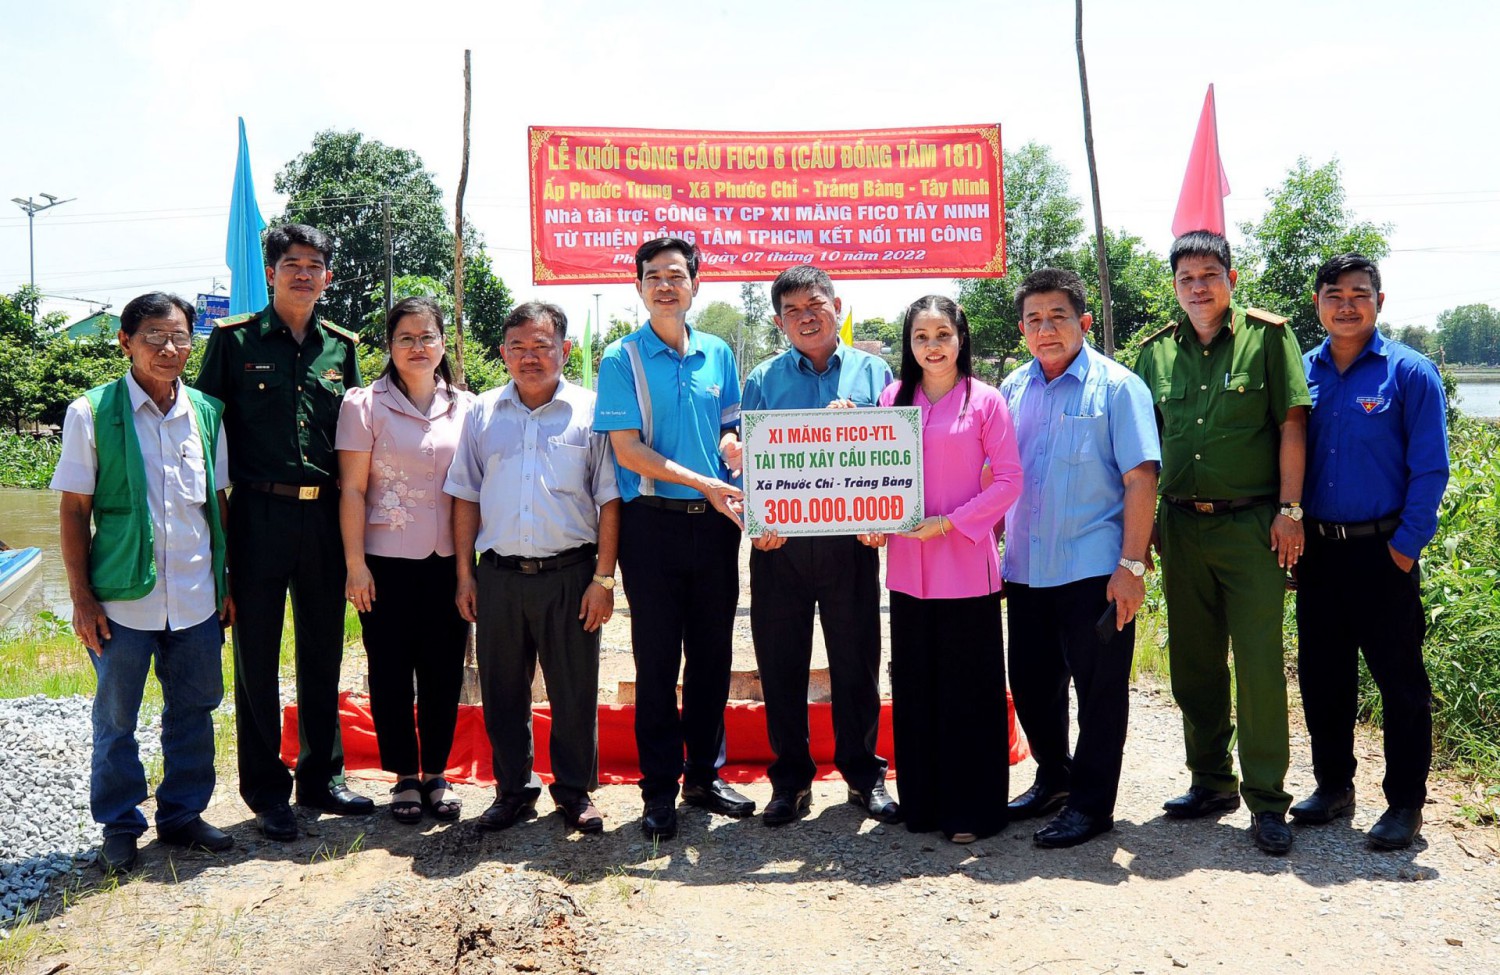 Các đại biểu chụp ảnh lưu niệm tại lễ khởi công Cầu FICO 6 tại ấp Phước Trung, xã Phước Chỉ.